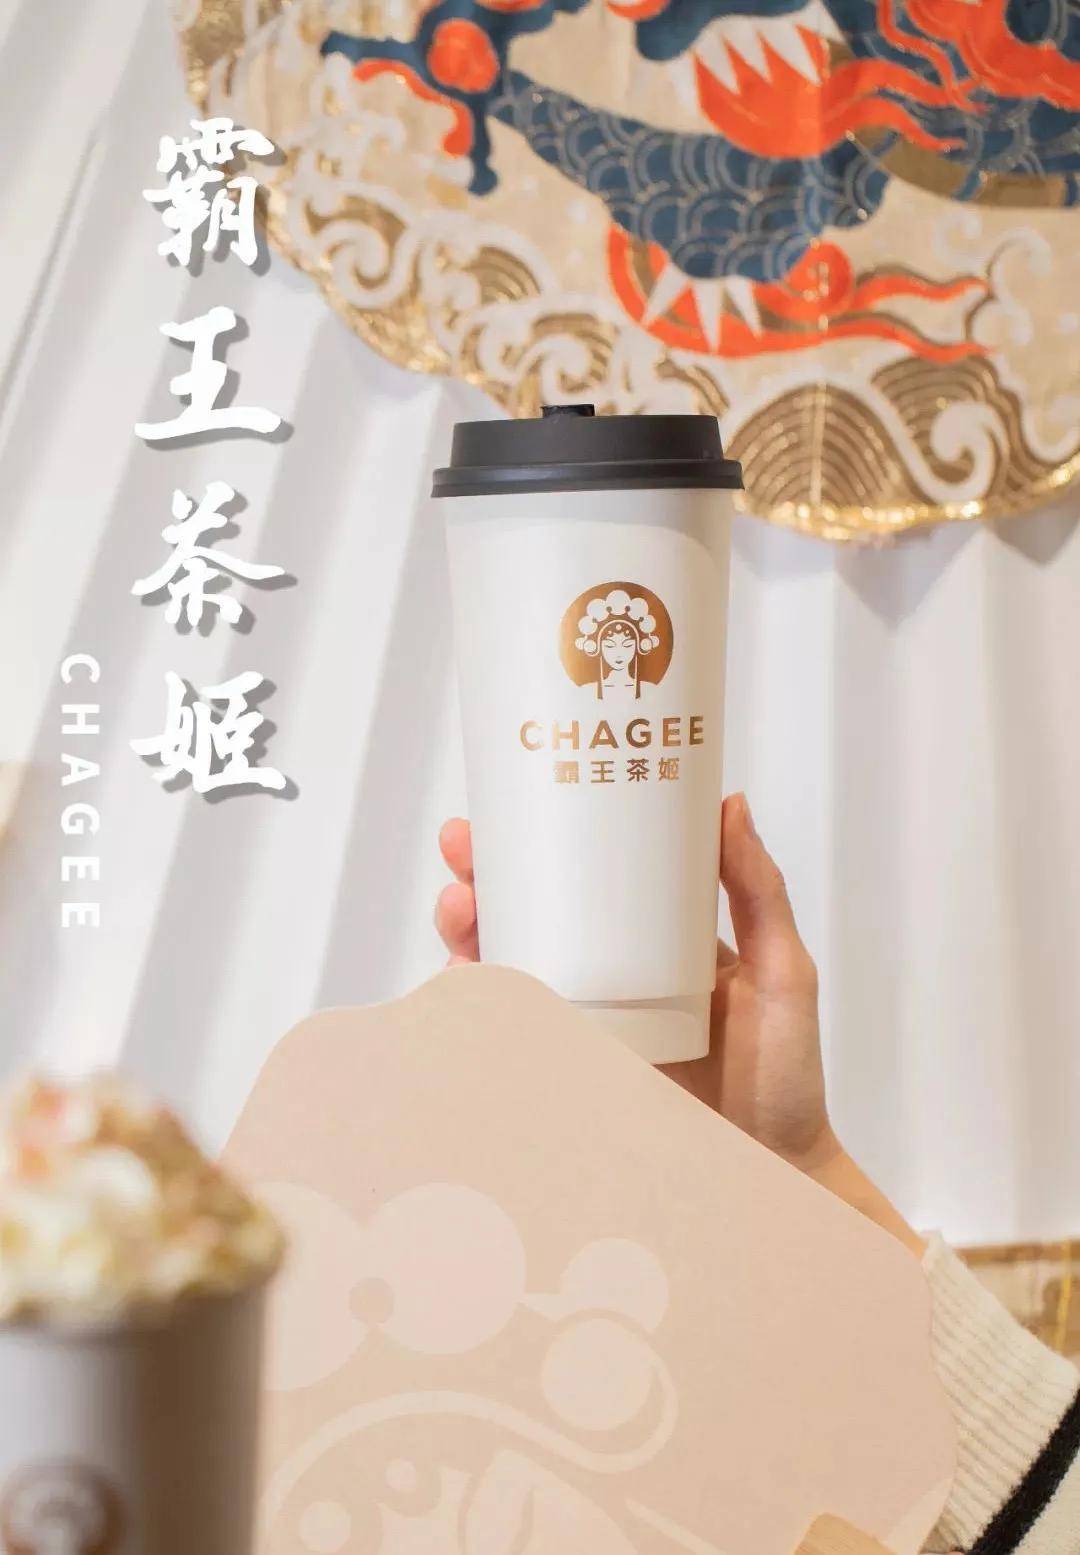 我们十分看好线下现制饮品的品牌连锁模式,霸王茶姬团队对新中式国风